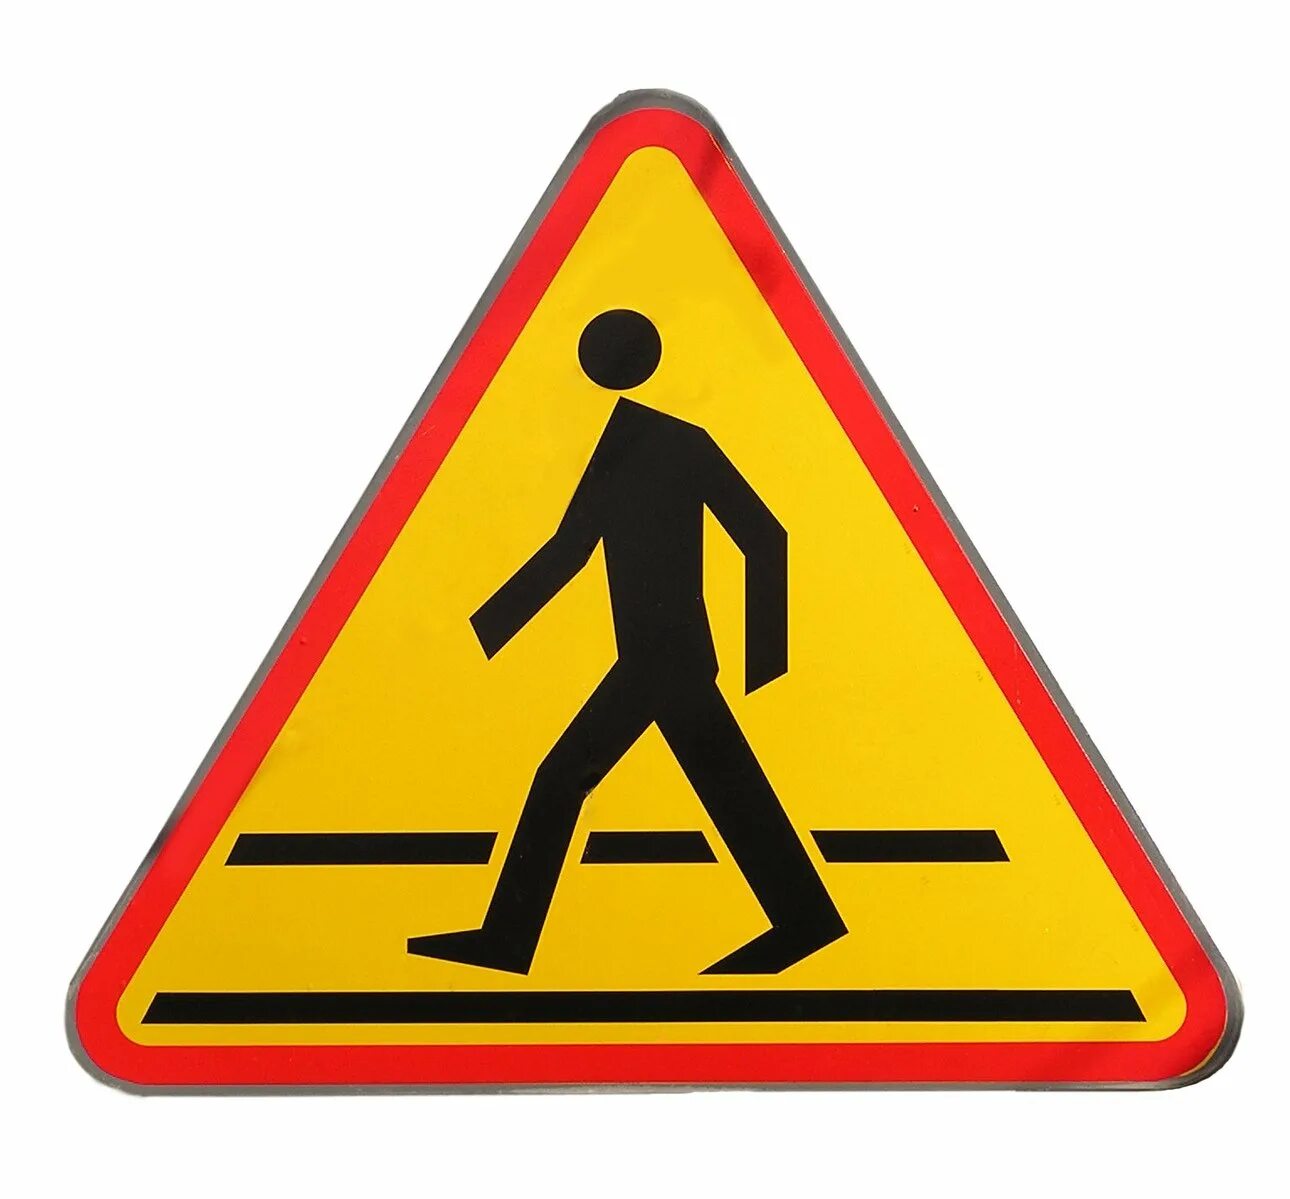 Знак пешехода в треугольнике. Знаки для пешеходов. Дорожные знаки для пешеходов. Знак пешеходный переход. Значок пешехода.